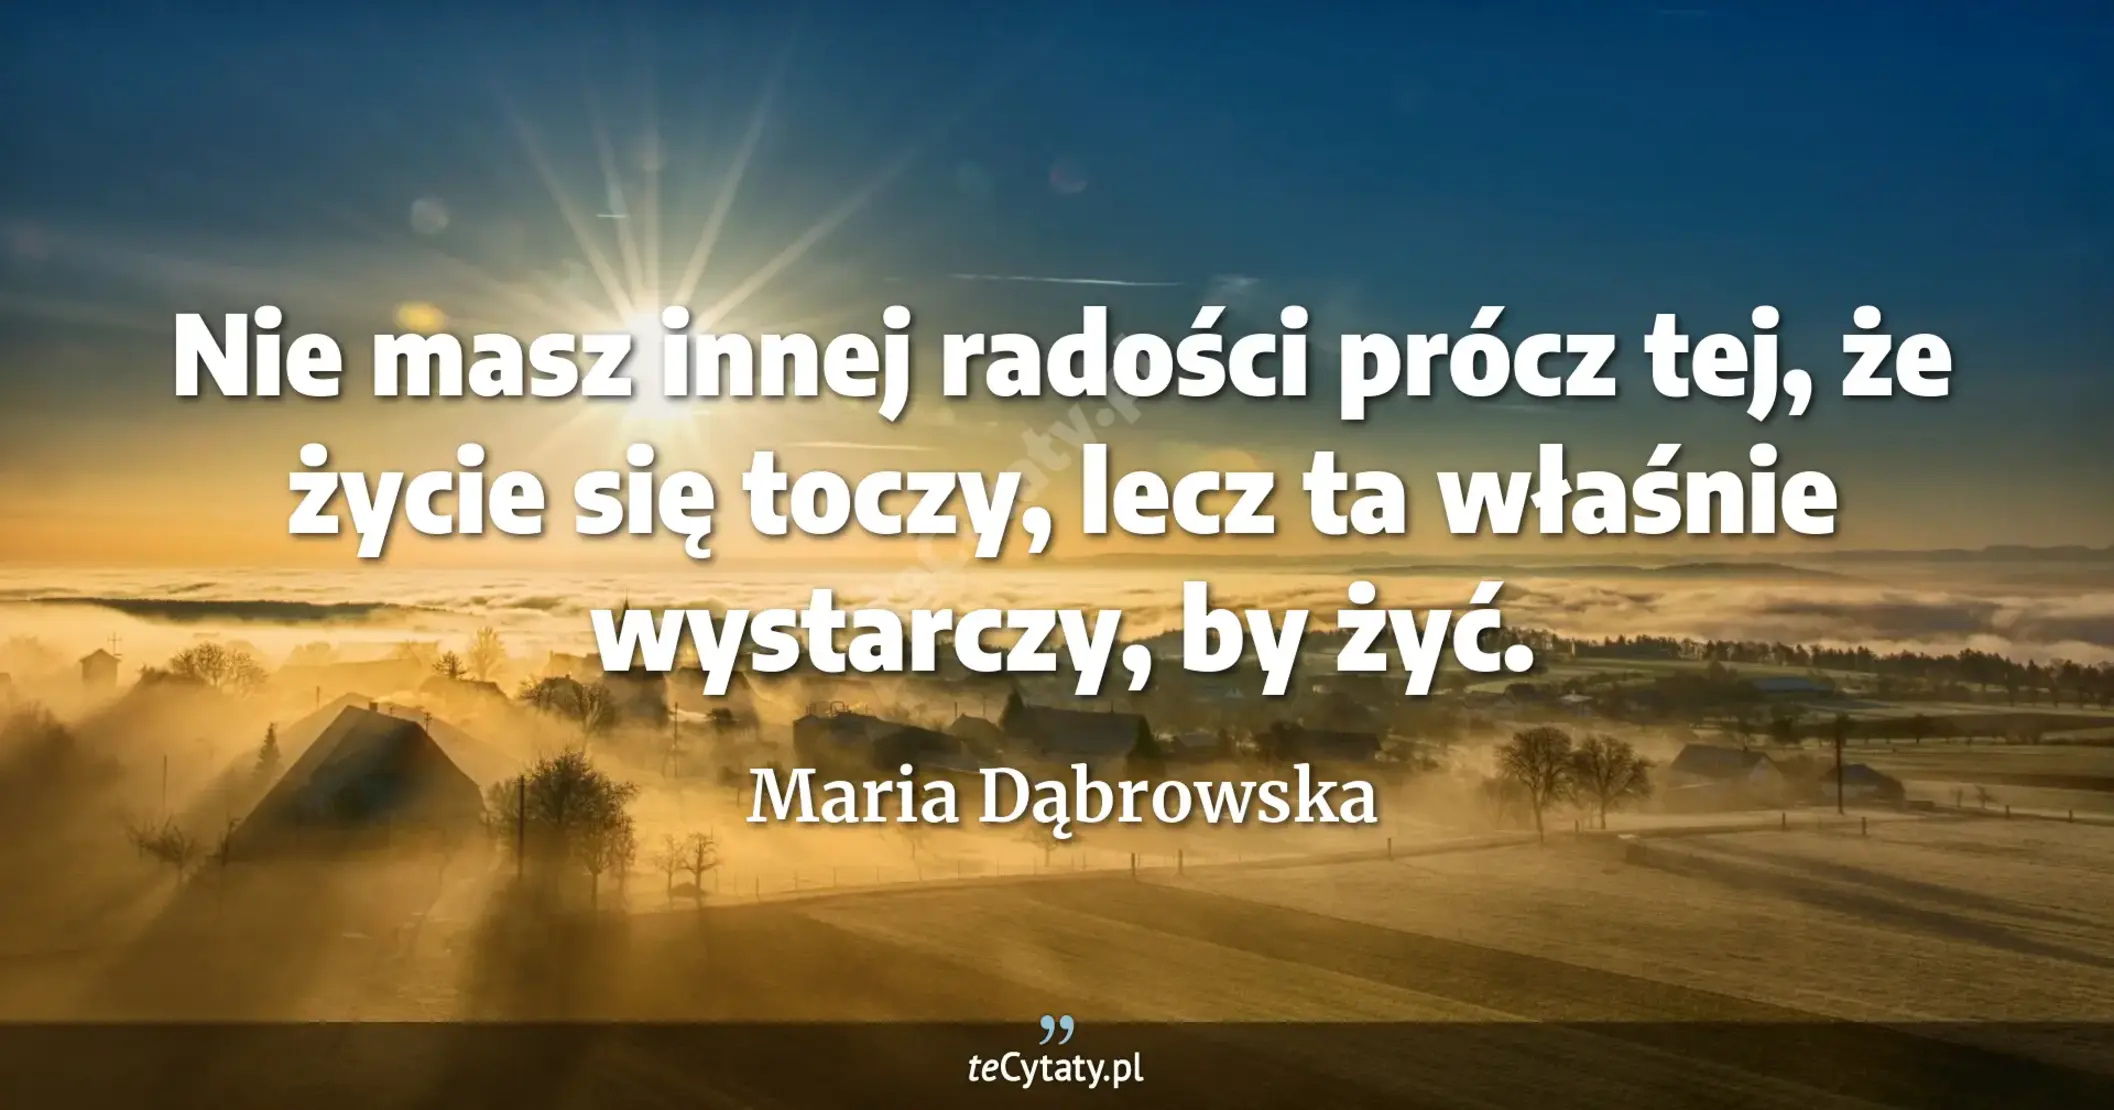 Nie masz innej radości prócz tej, że życie się toczy, lecz ta właśnie wystarczy, by żyć. - Maria Dąbrowska